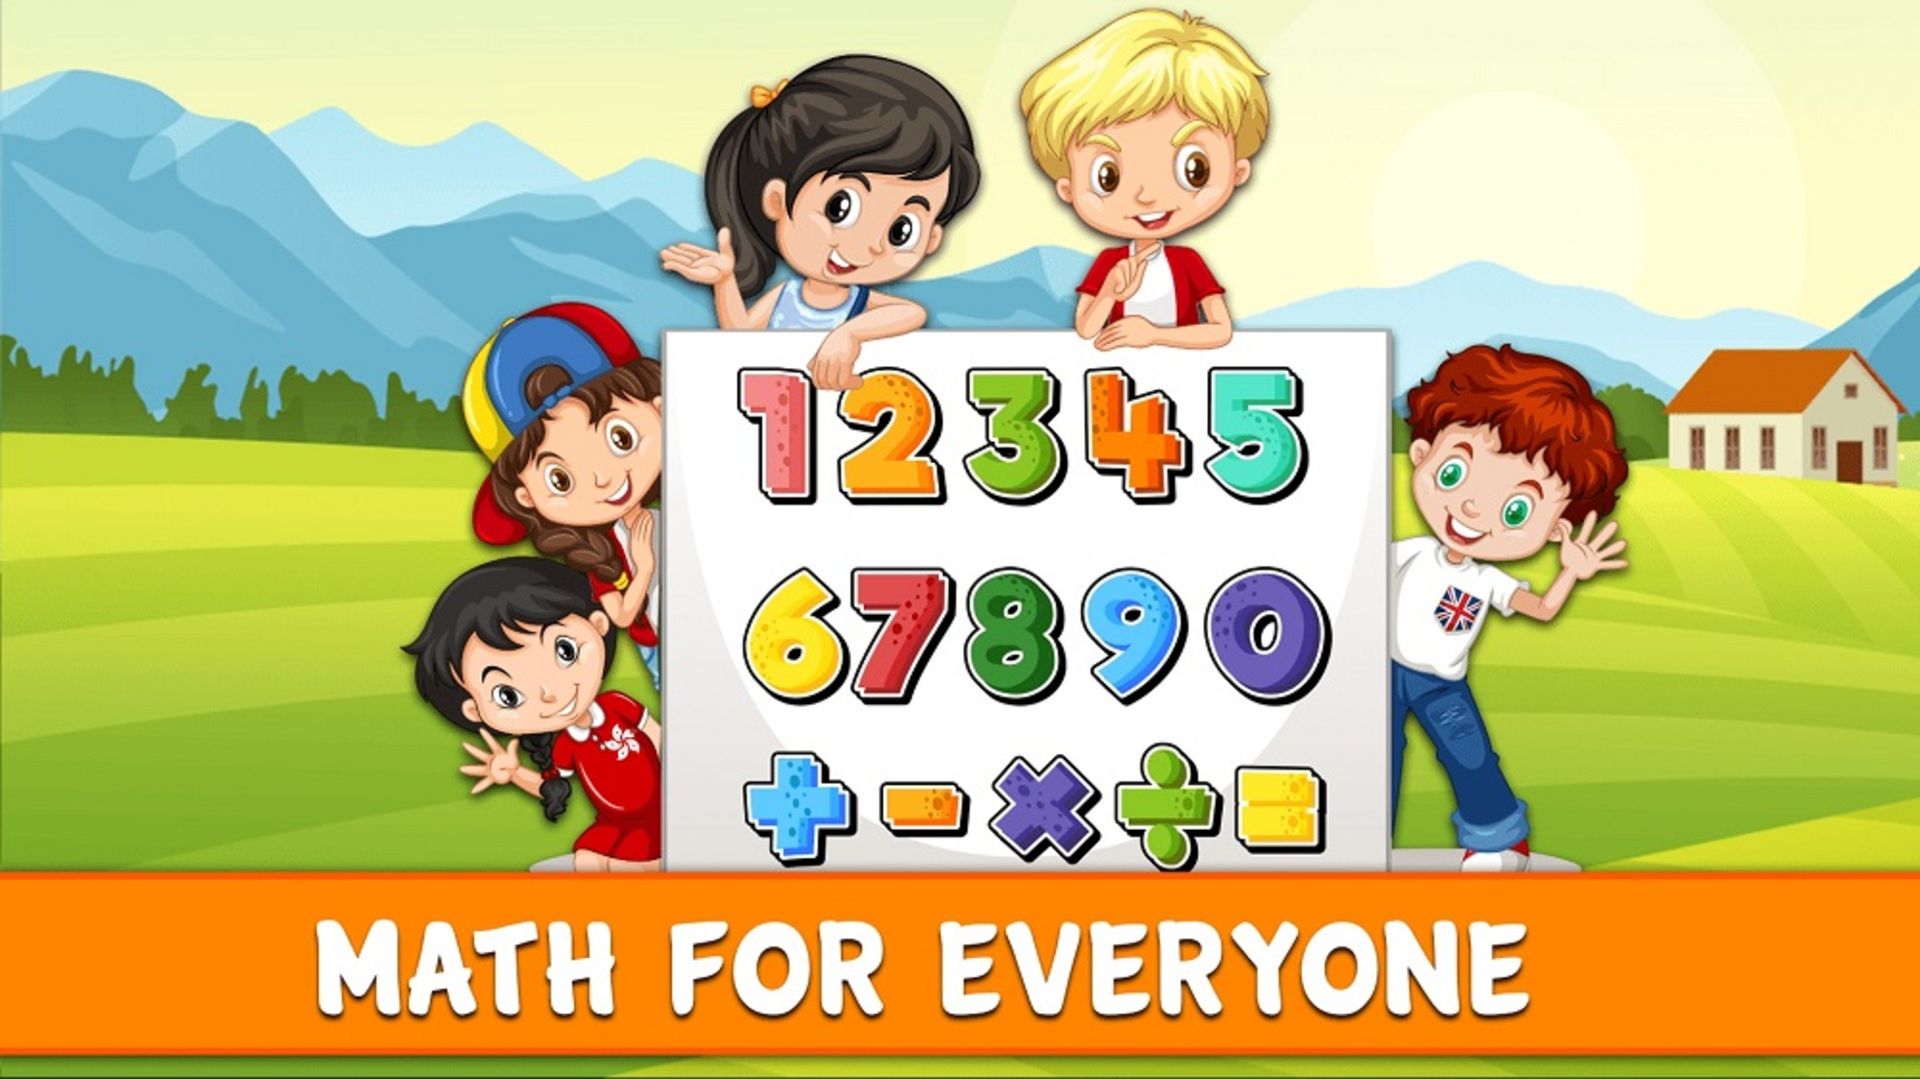 یادگیری ریاضیات ساده با Math Game